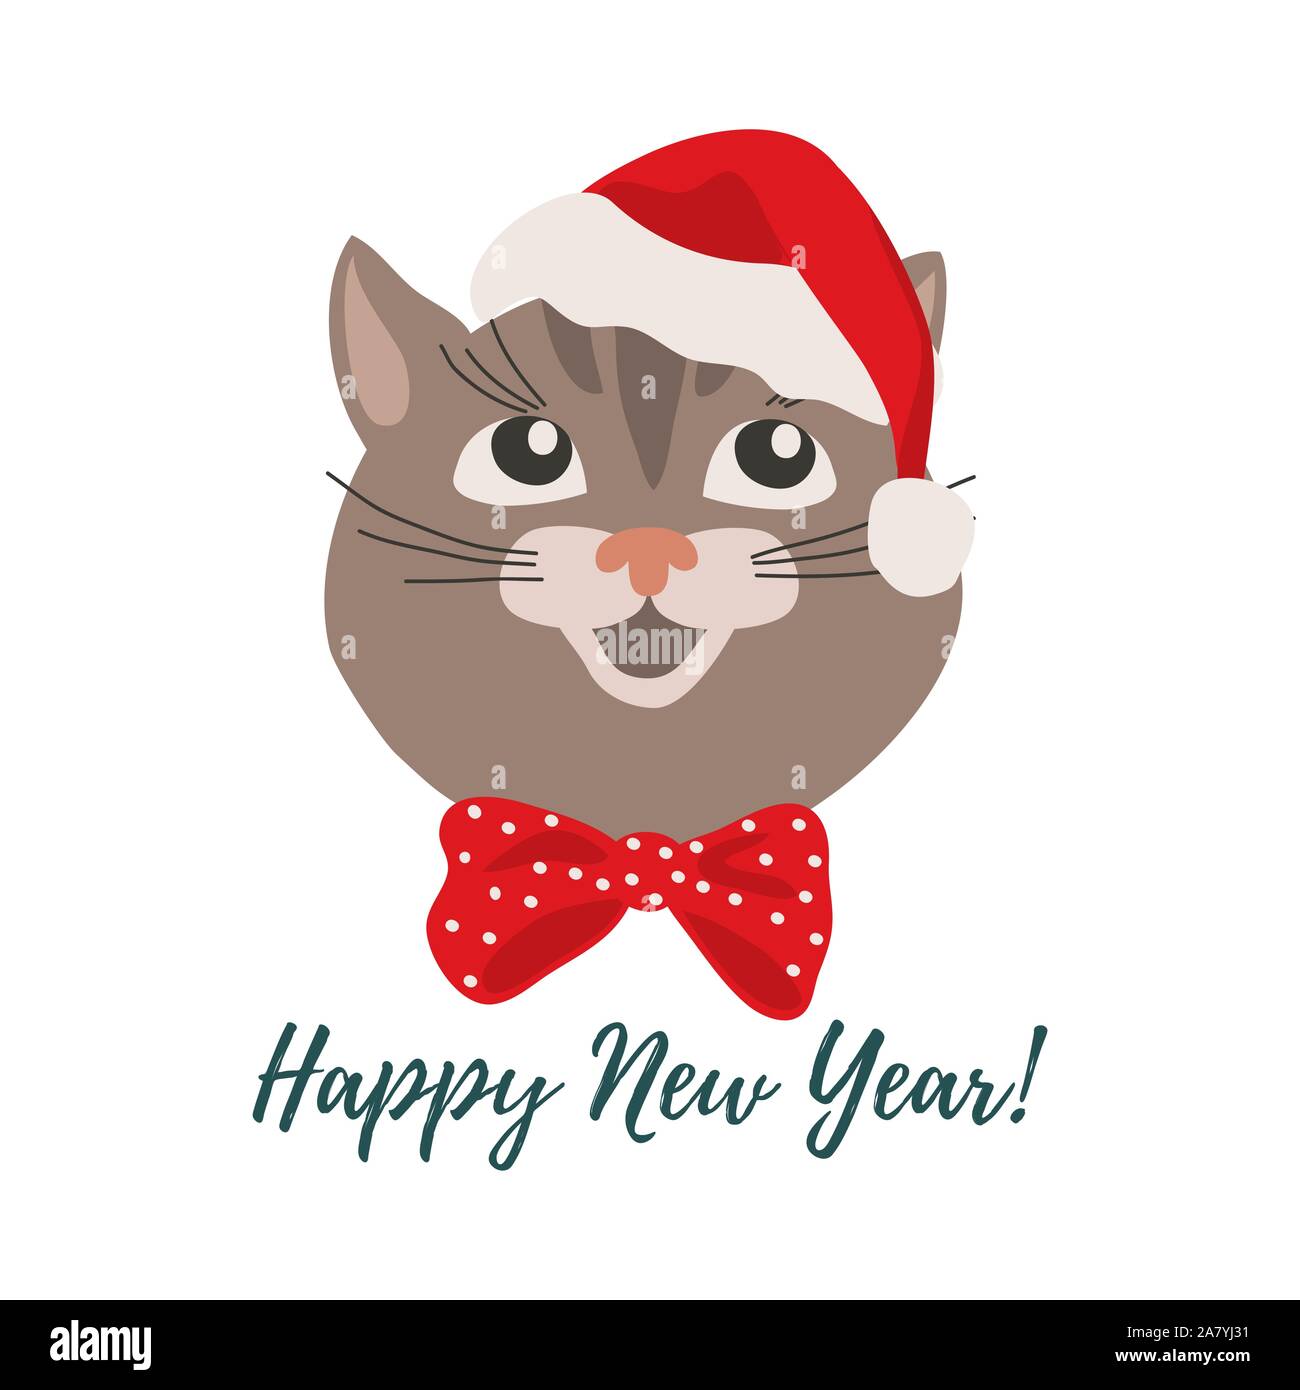 Buon Natale e Felice Anno Nuovo. Isolato cartoon sorridente faccia del gatto in un Natale di Red hat. Vettore di Carini Illustrazione Vettoriale